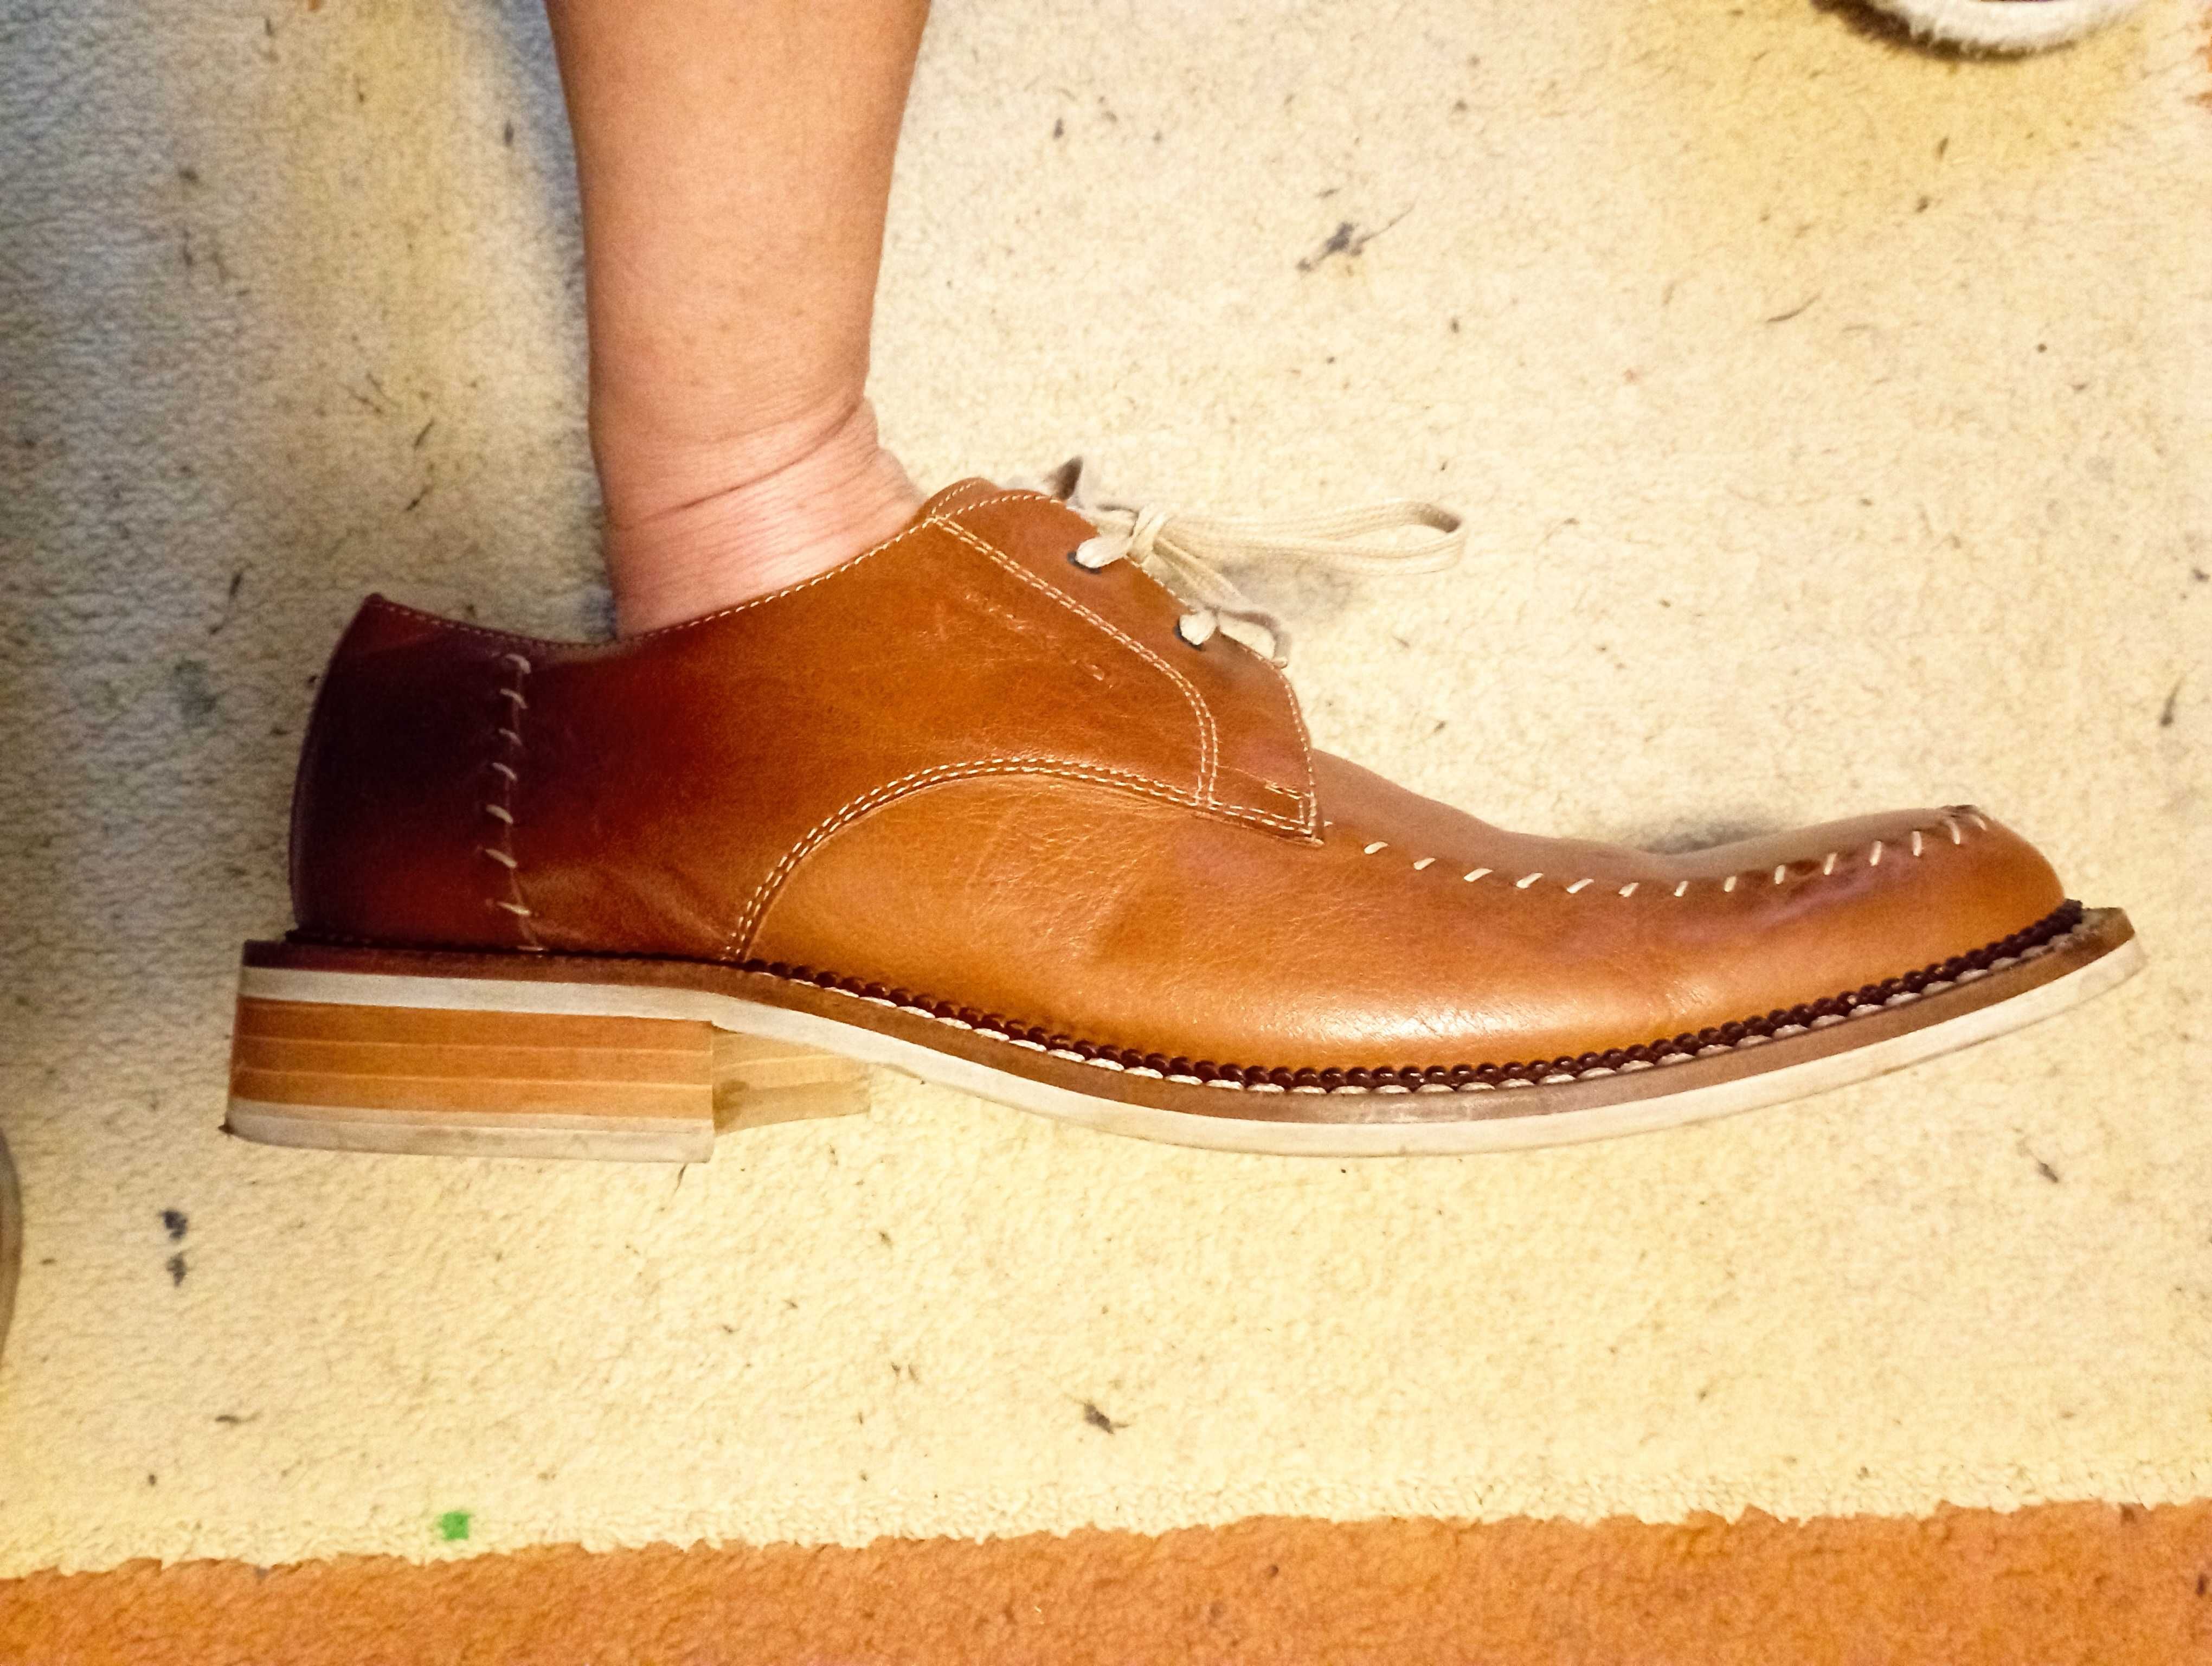 Дерби обувки от естествена кожа на FRANSI, N45